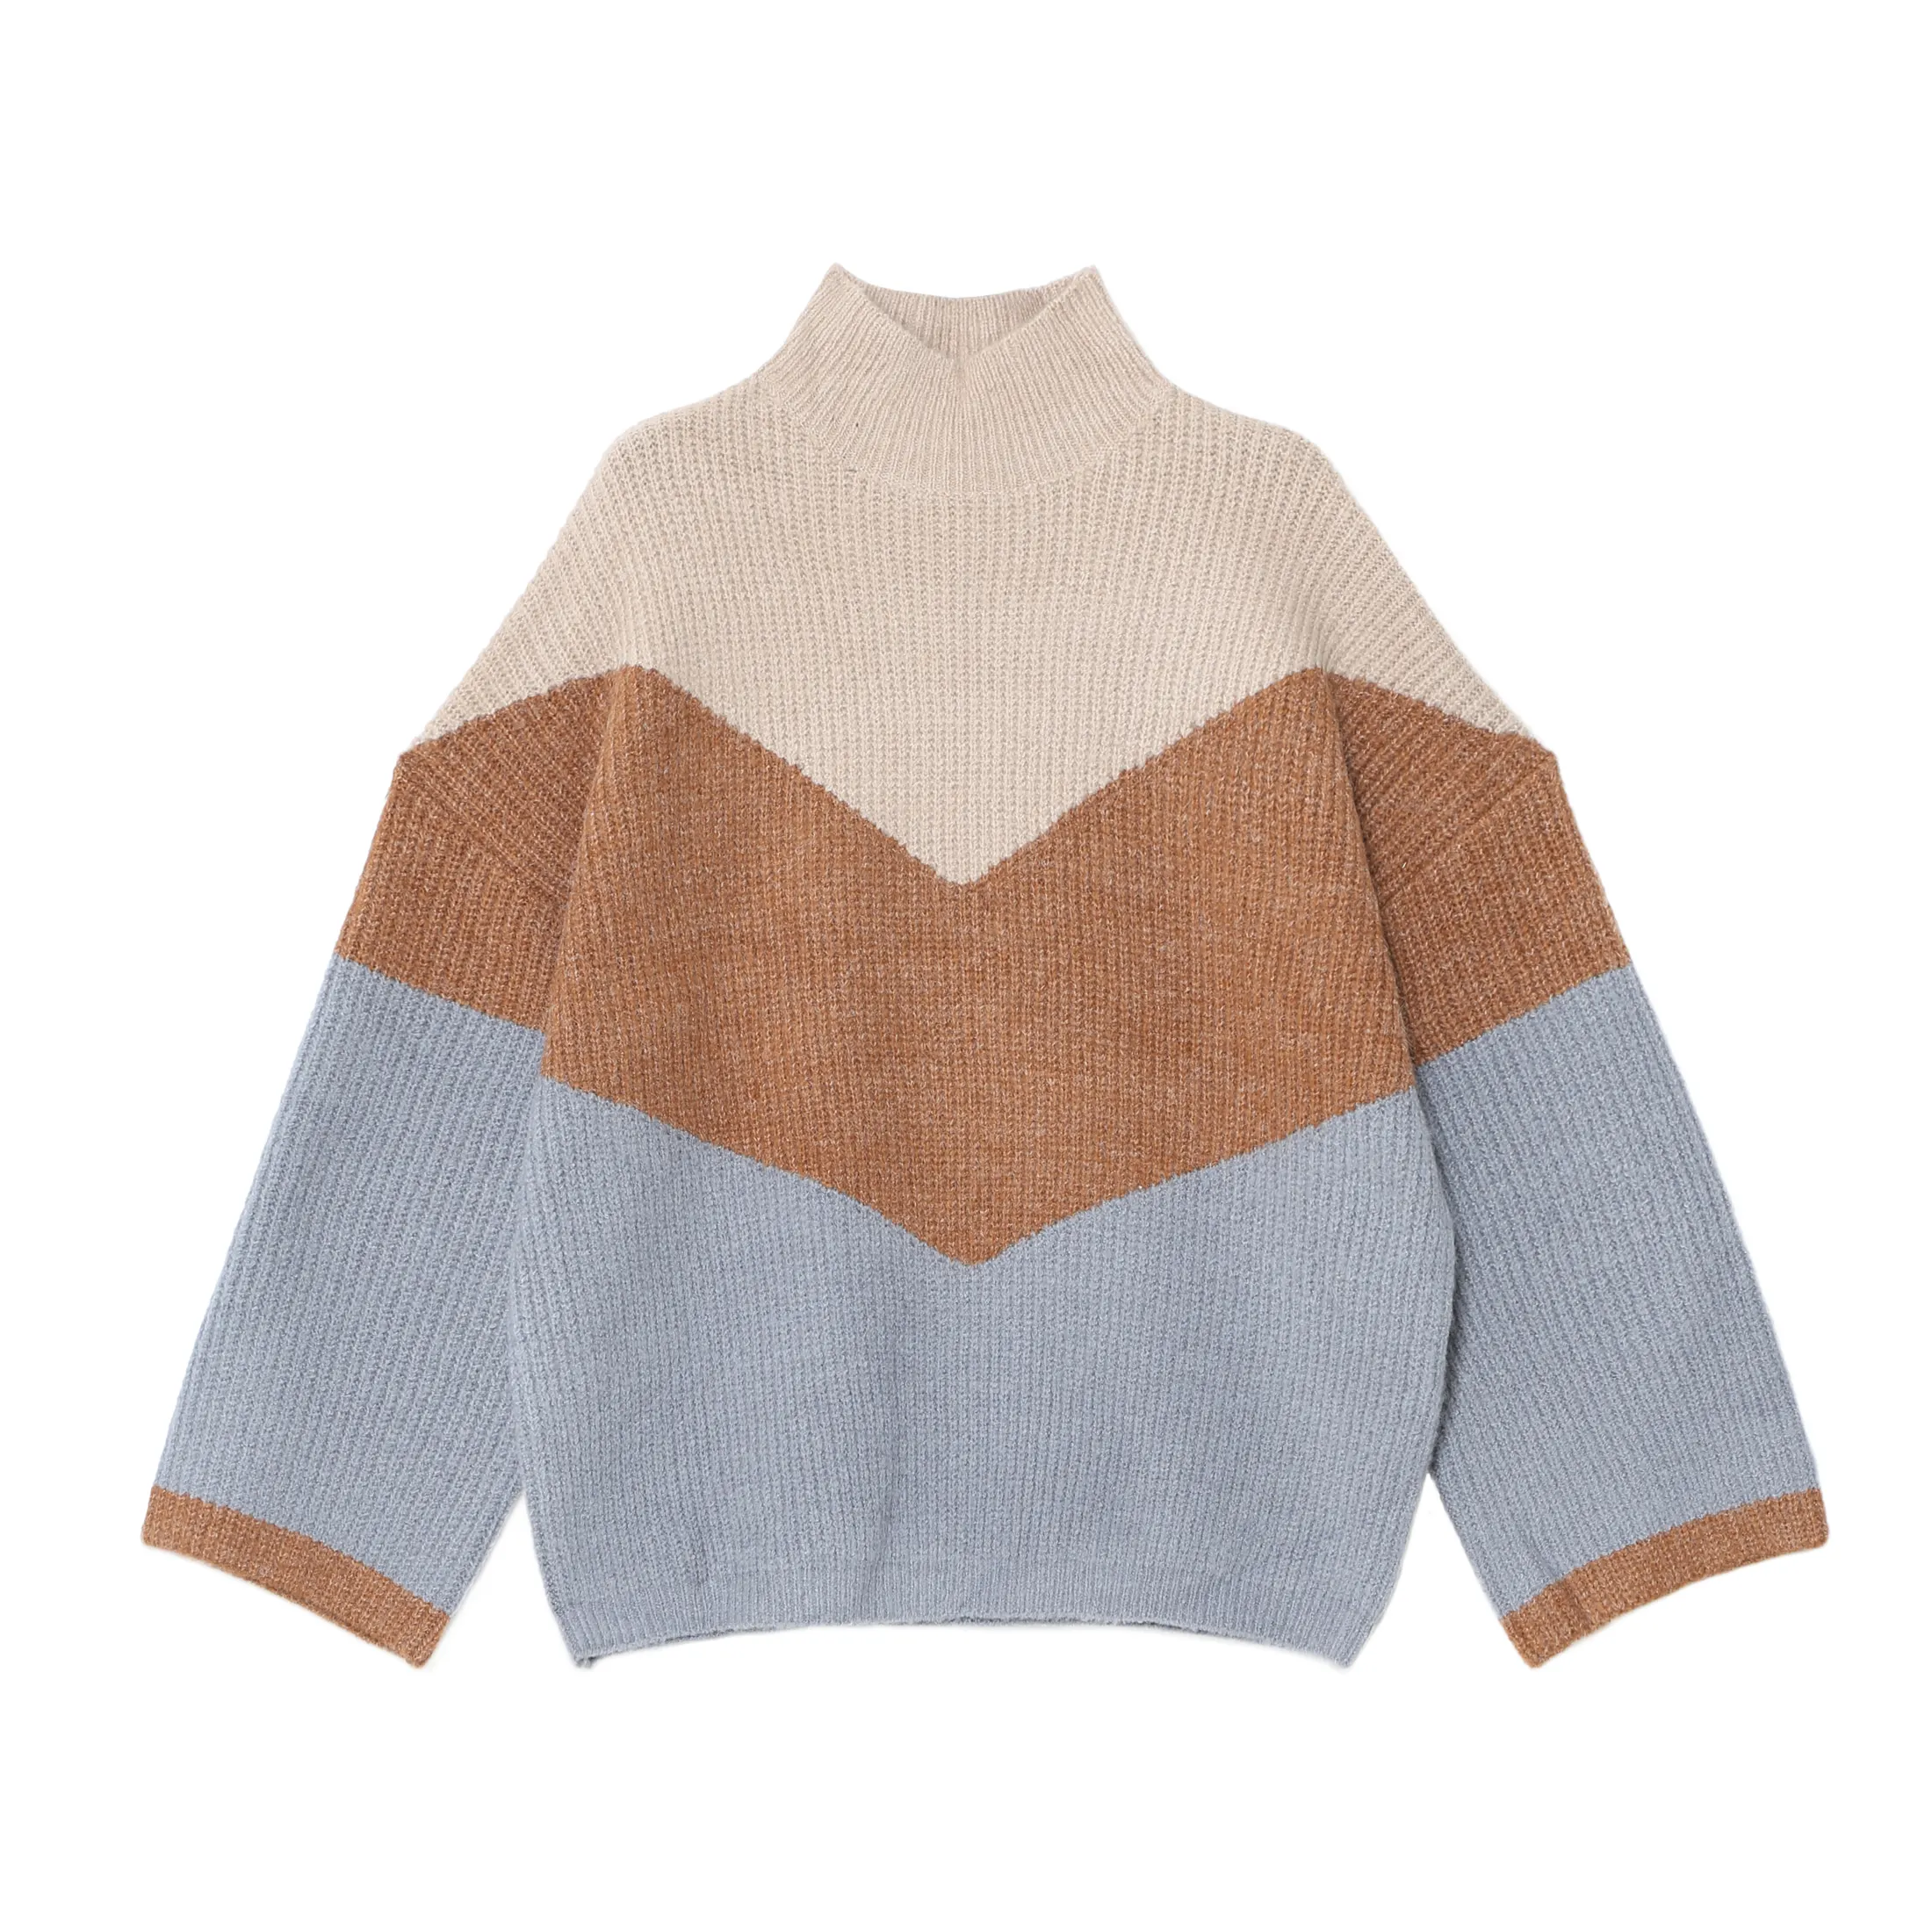 थोक उच्च गुणवत्ता उत्पाद बुनना बंद गले स्वेटर शैली ऊन उच्च गर्दन परिधान महिलाओं के बुना हुआ 7GG कछुआ गर्दन स्वेटर